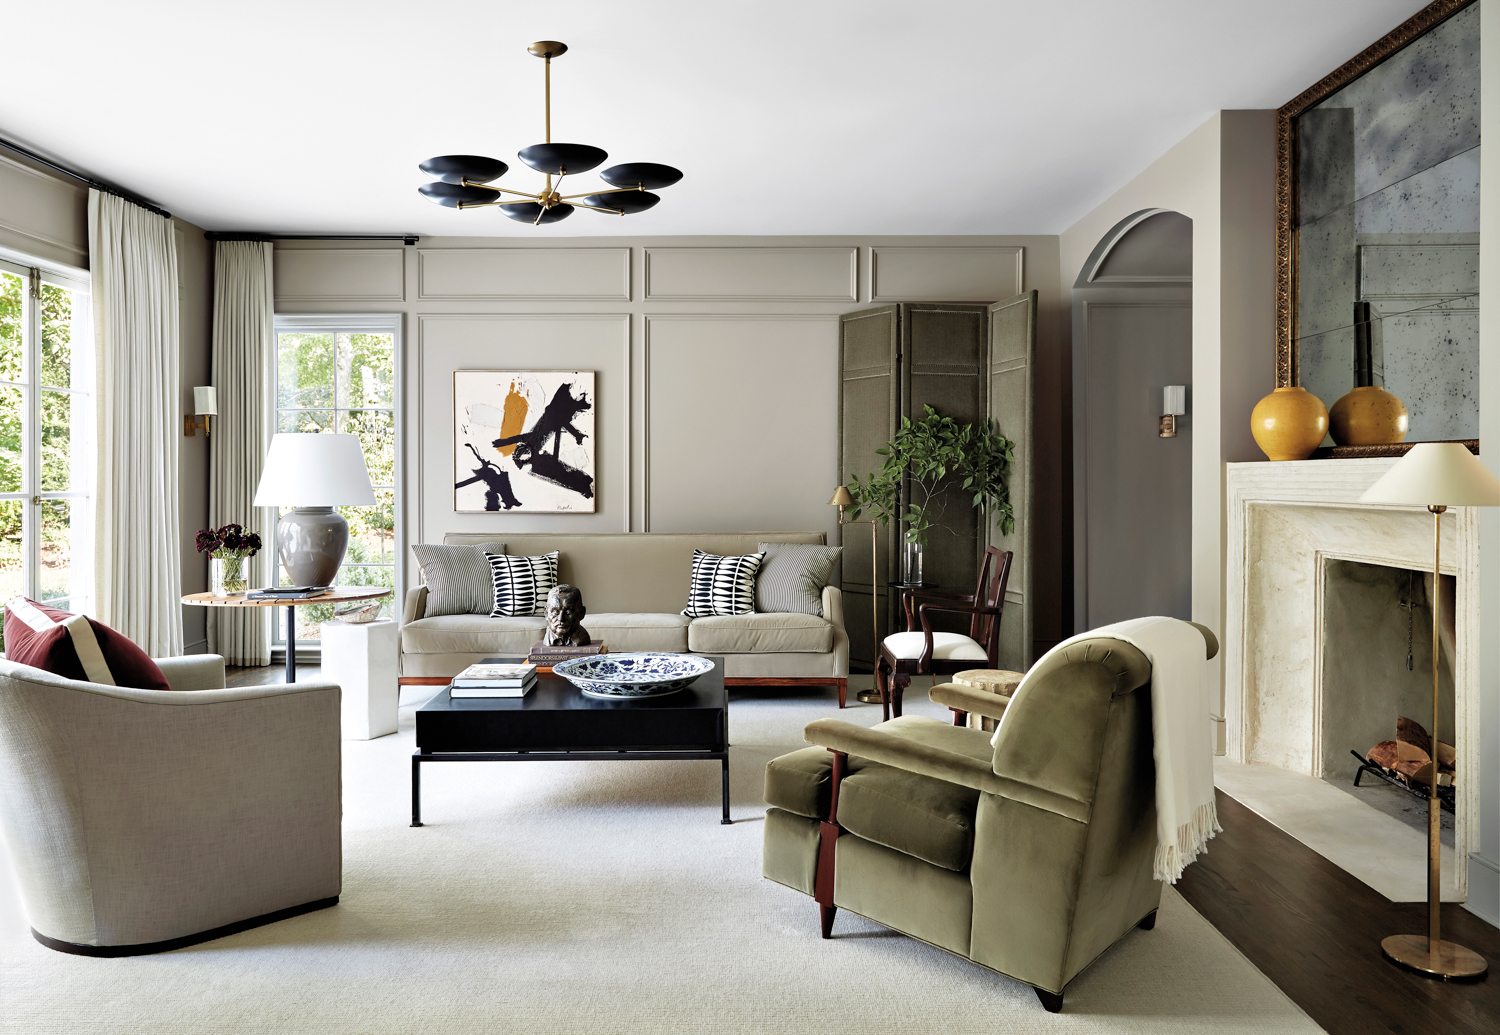 Soft gray living room with velvet upholstery, modern lighting and abstract art